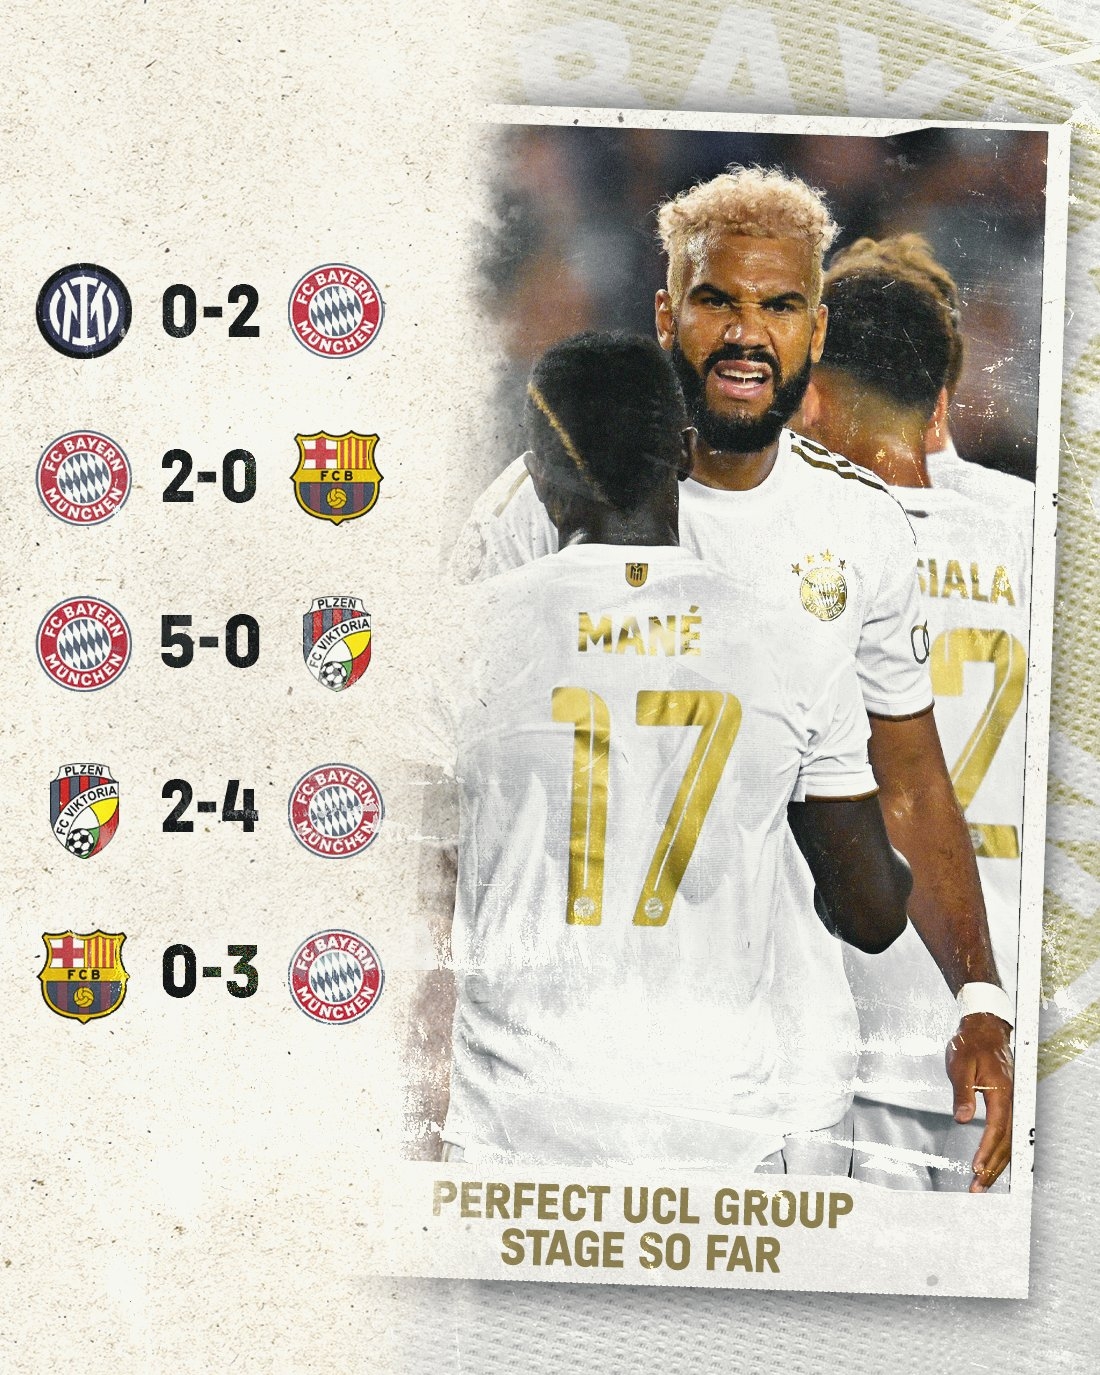 皇马马德里4-3淘汰拜仁慕尼黑，连续3年晋级欧冠决赛 - 奇点